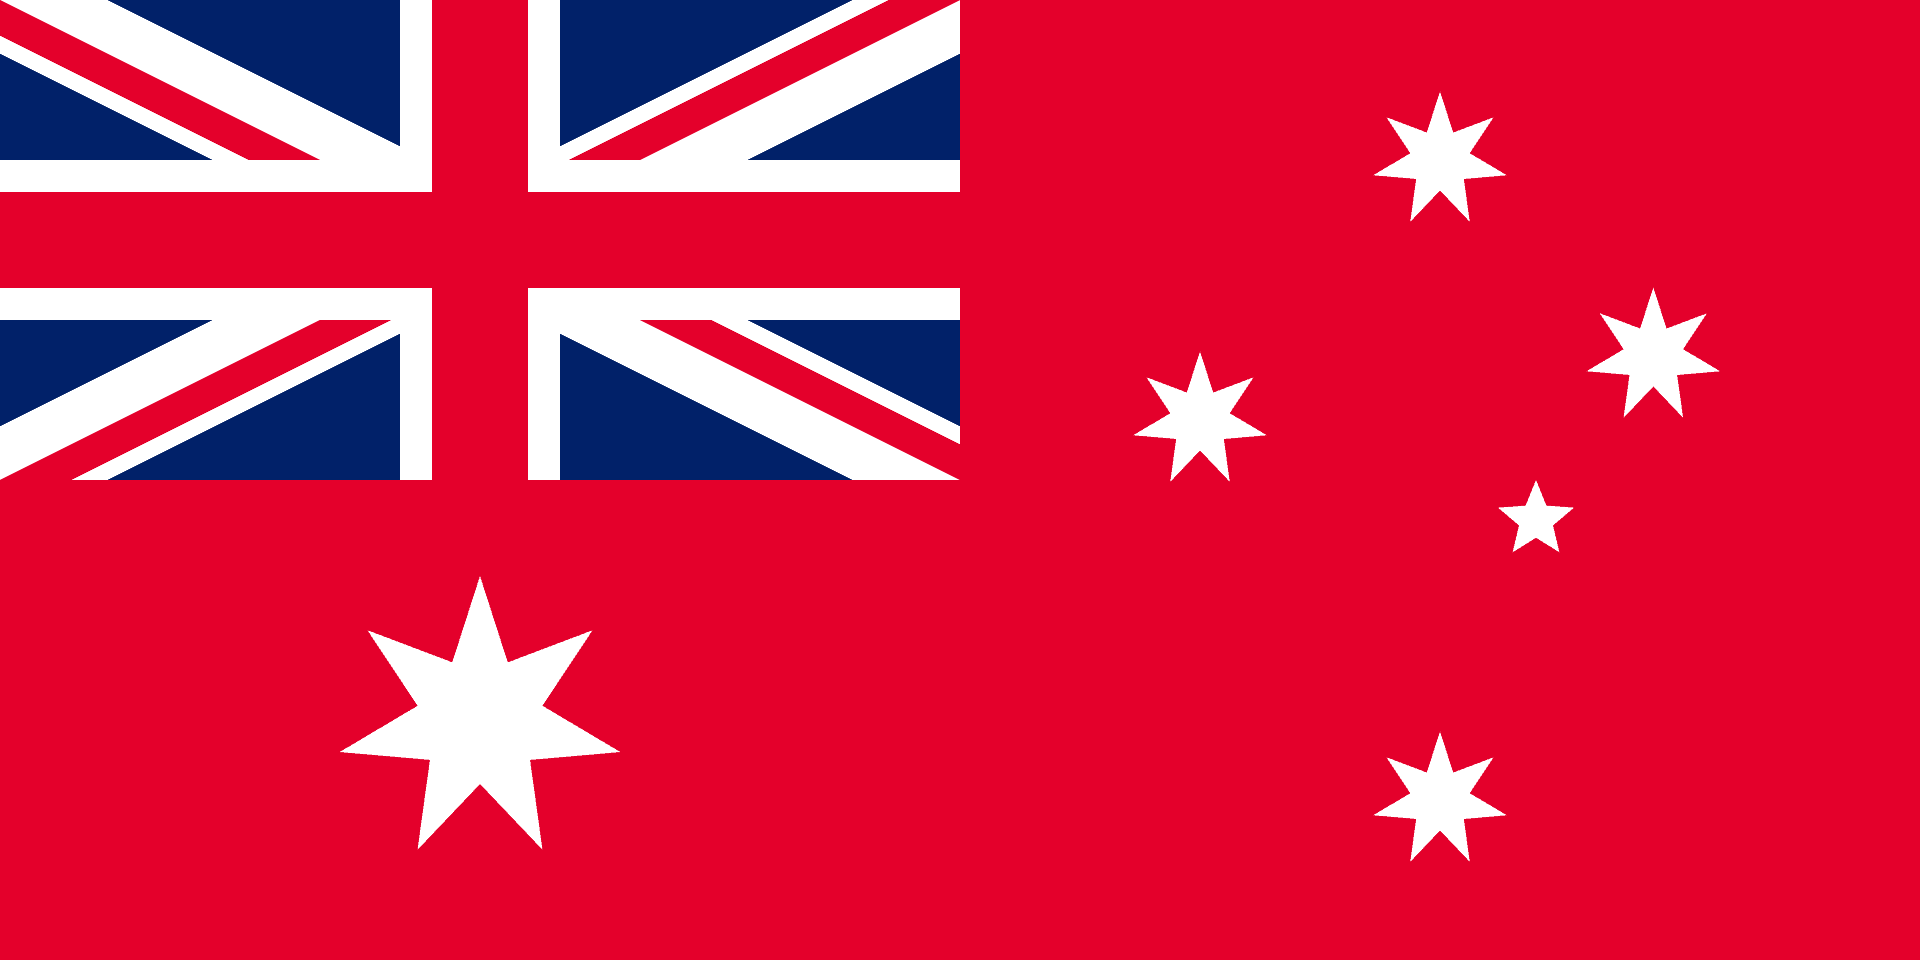 Red ensign Australian flag